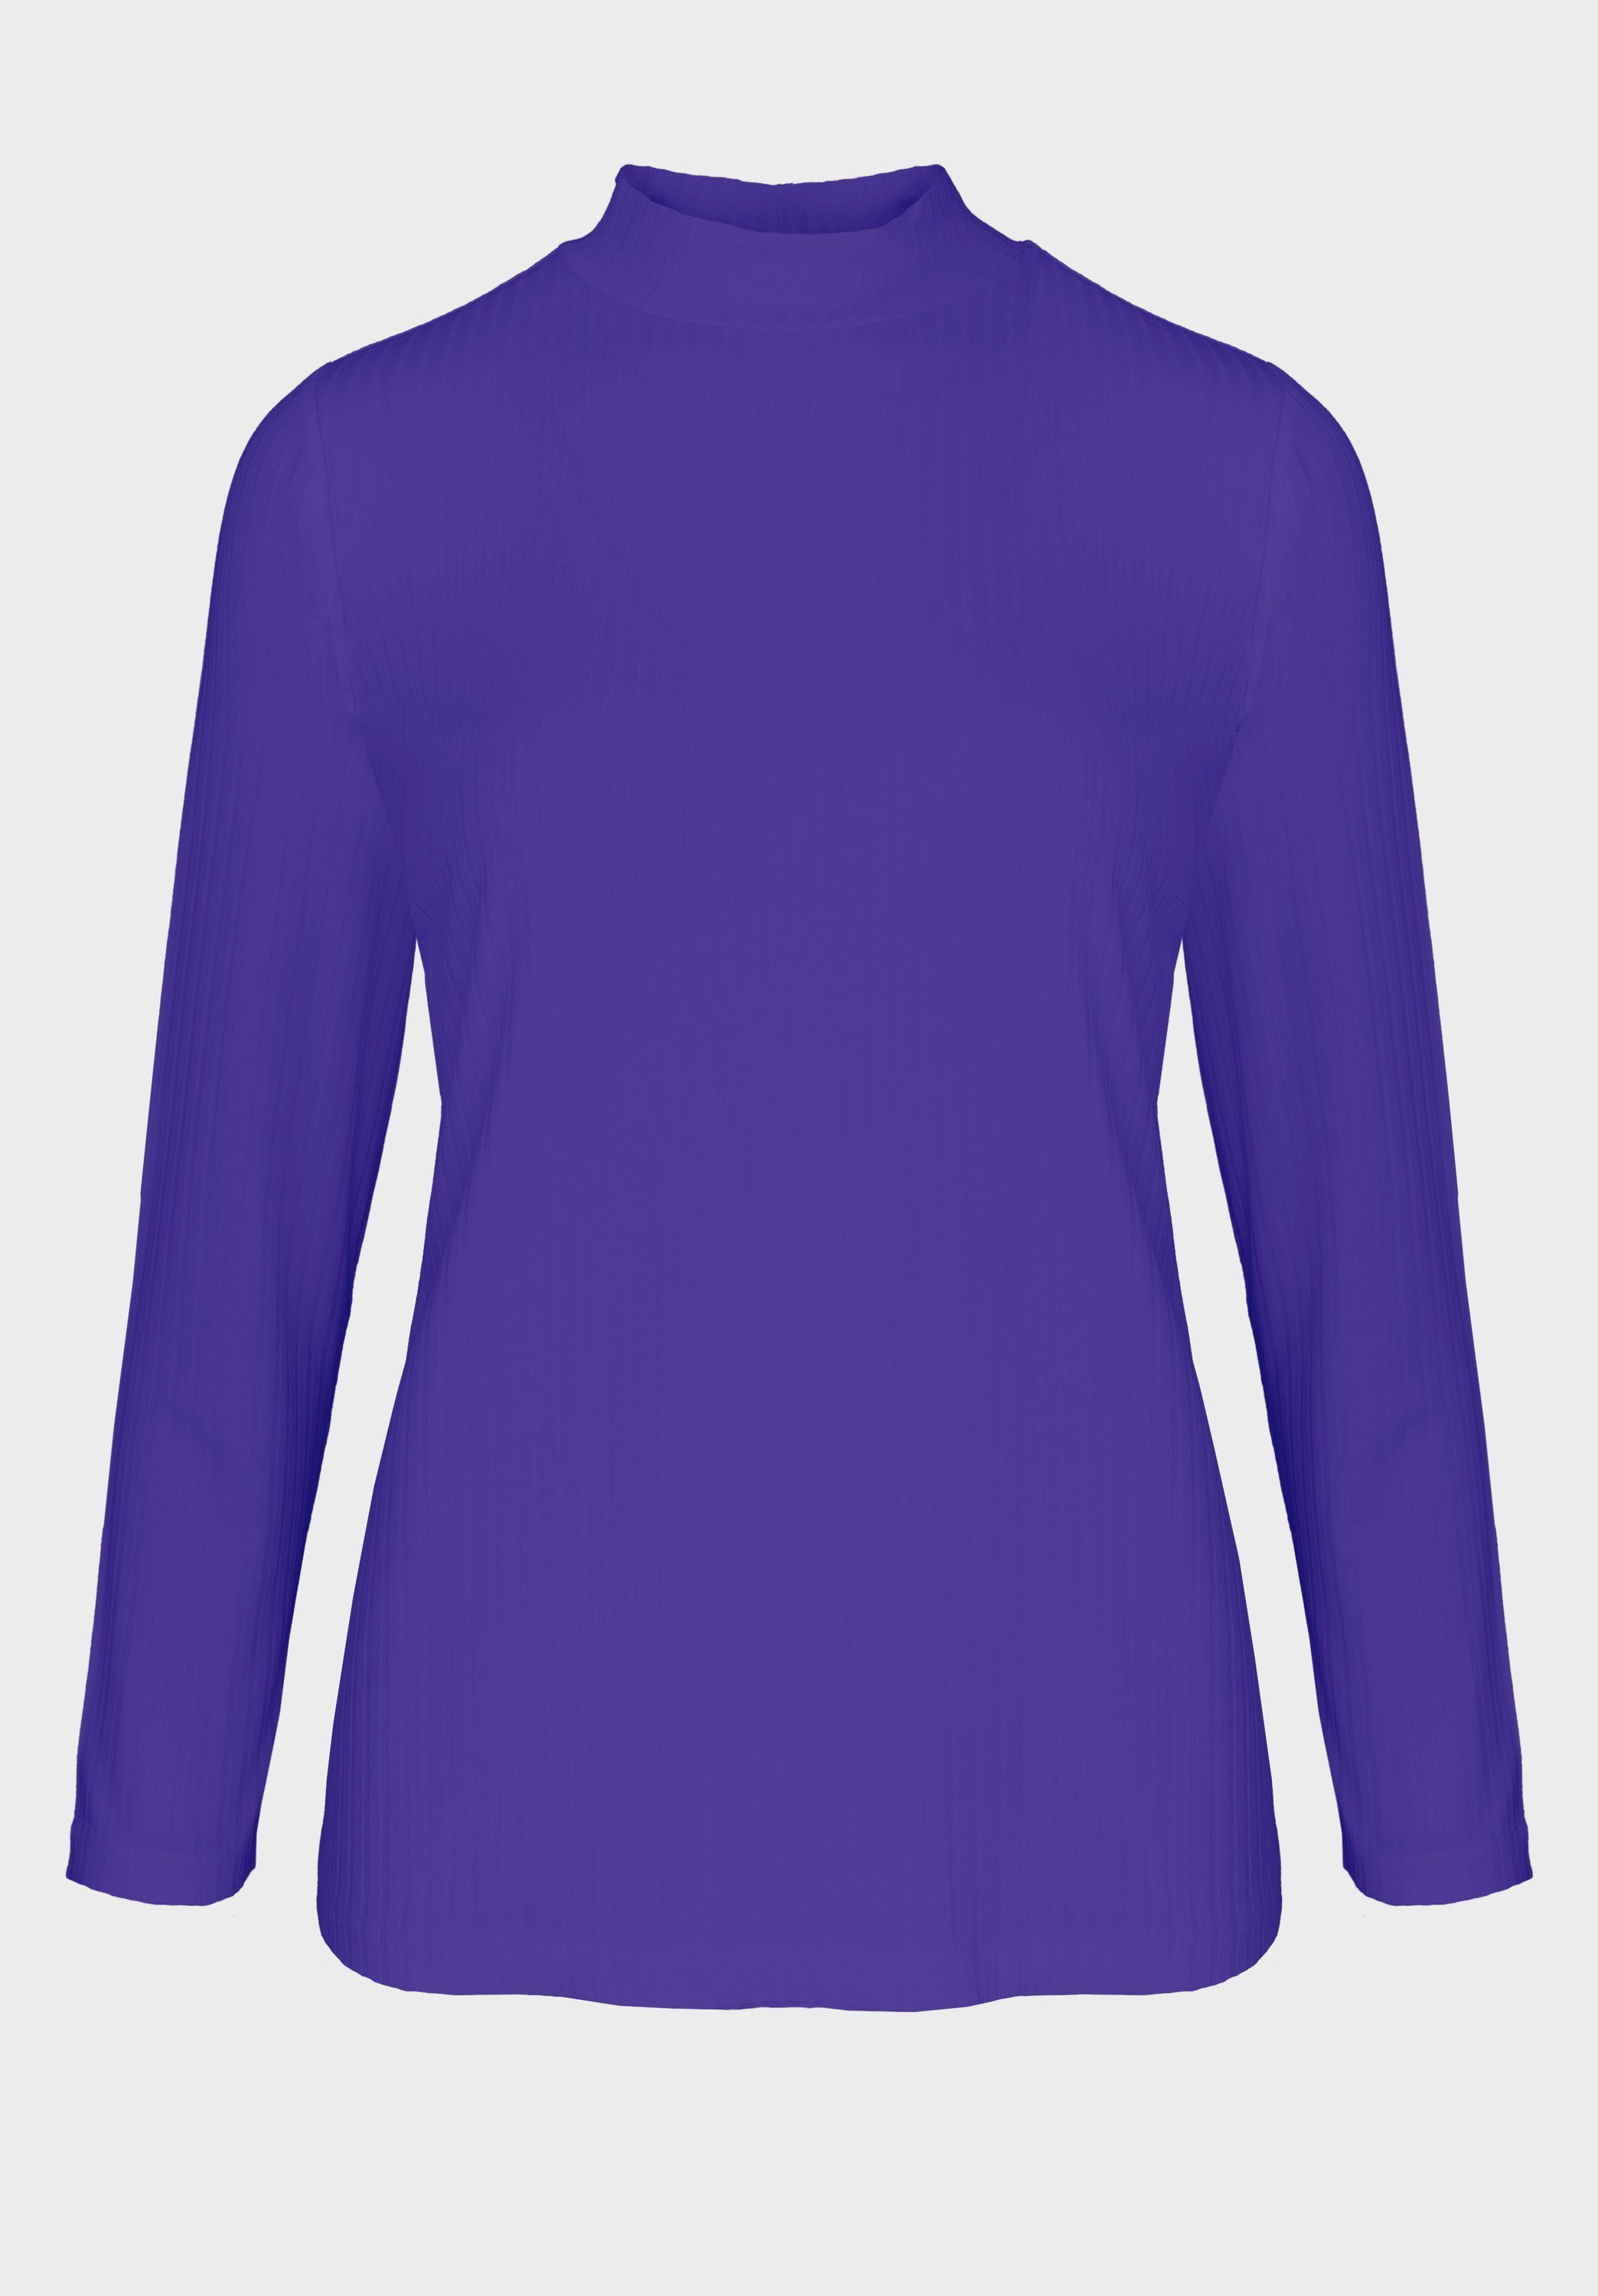 Kaufen Sie zum Super-Schnäppchenpreis! bianca Langarmshirt GRETA mit Turtle-Neck modernem in Trendfarben coolen purple